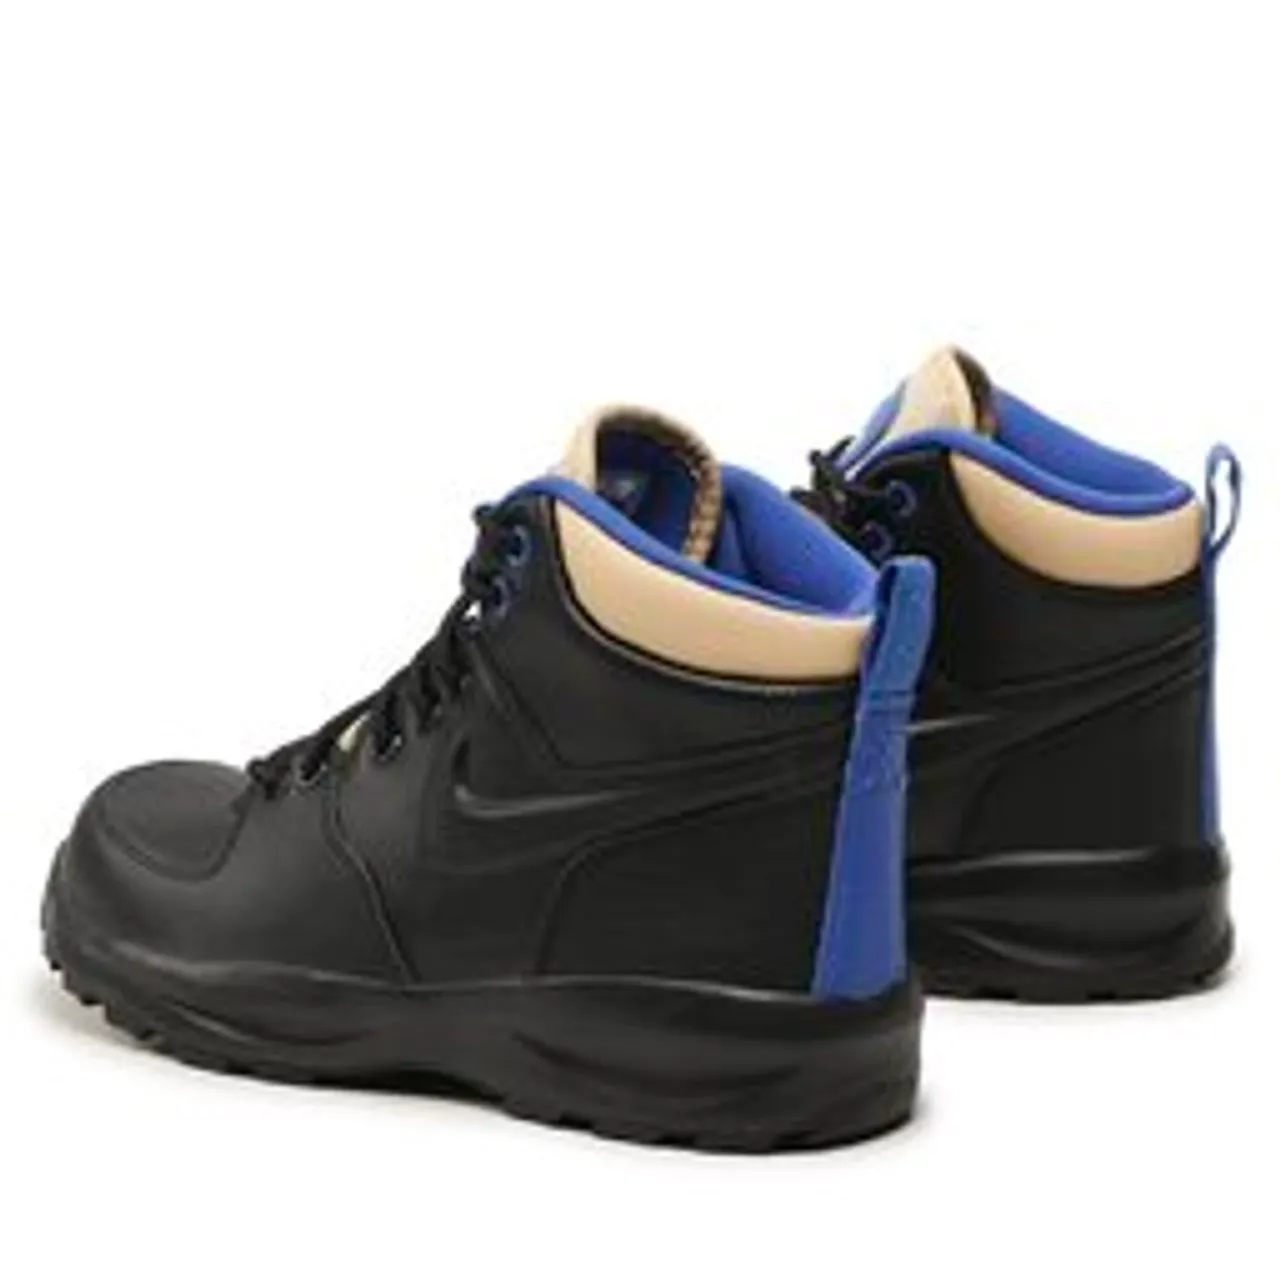 Sneakers Nike Manoa Ltr (Gs) BQ5372 003 Schwarz